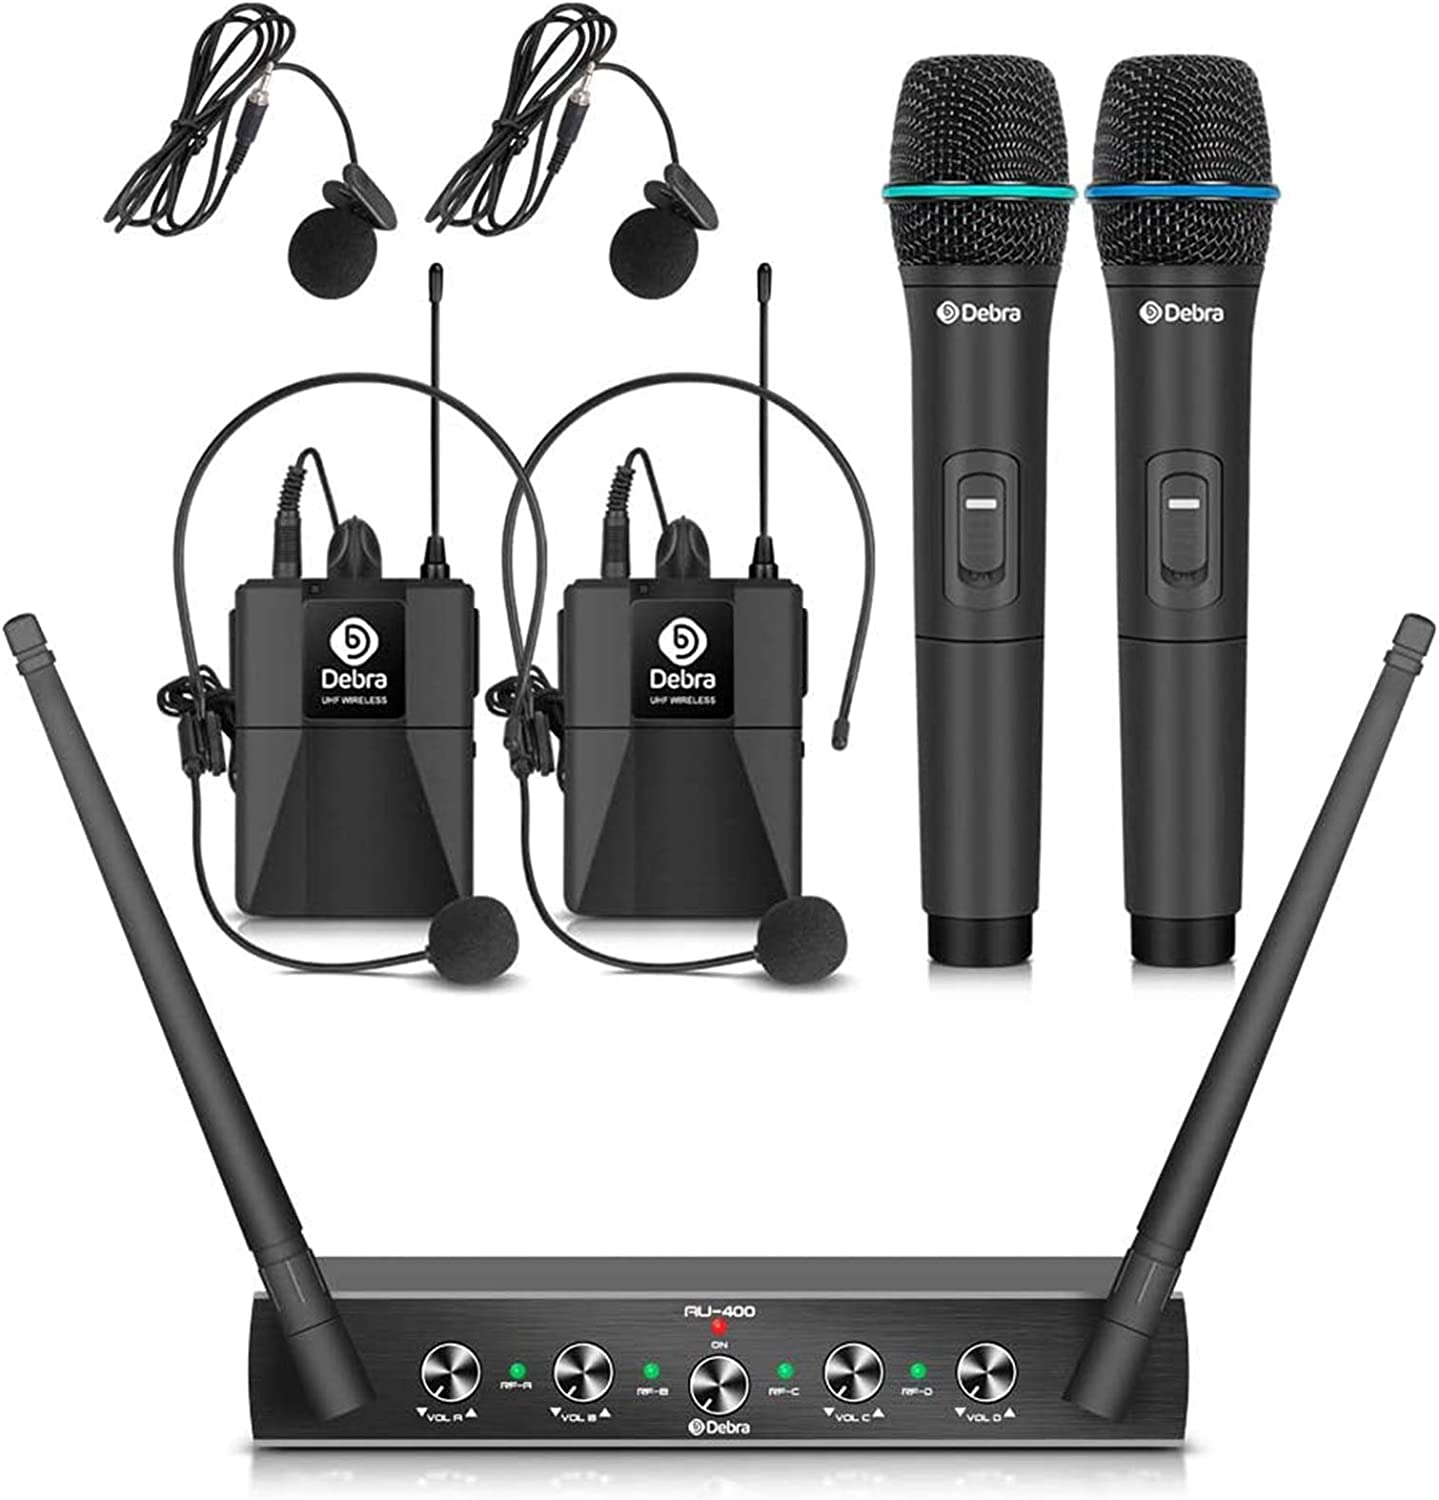 Sistema de micrófono inalámbrico de 4 canales con micrófonos inalámbricos Lavalier de mano-Debra Audio AU400 Pro UHF